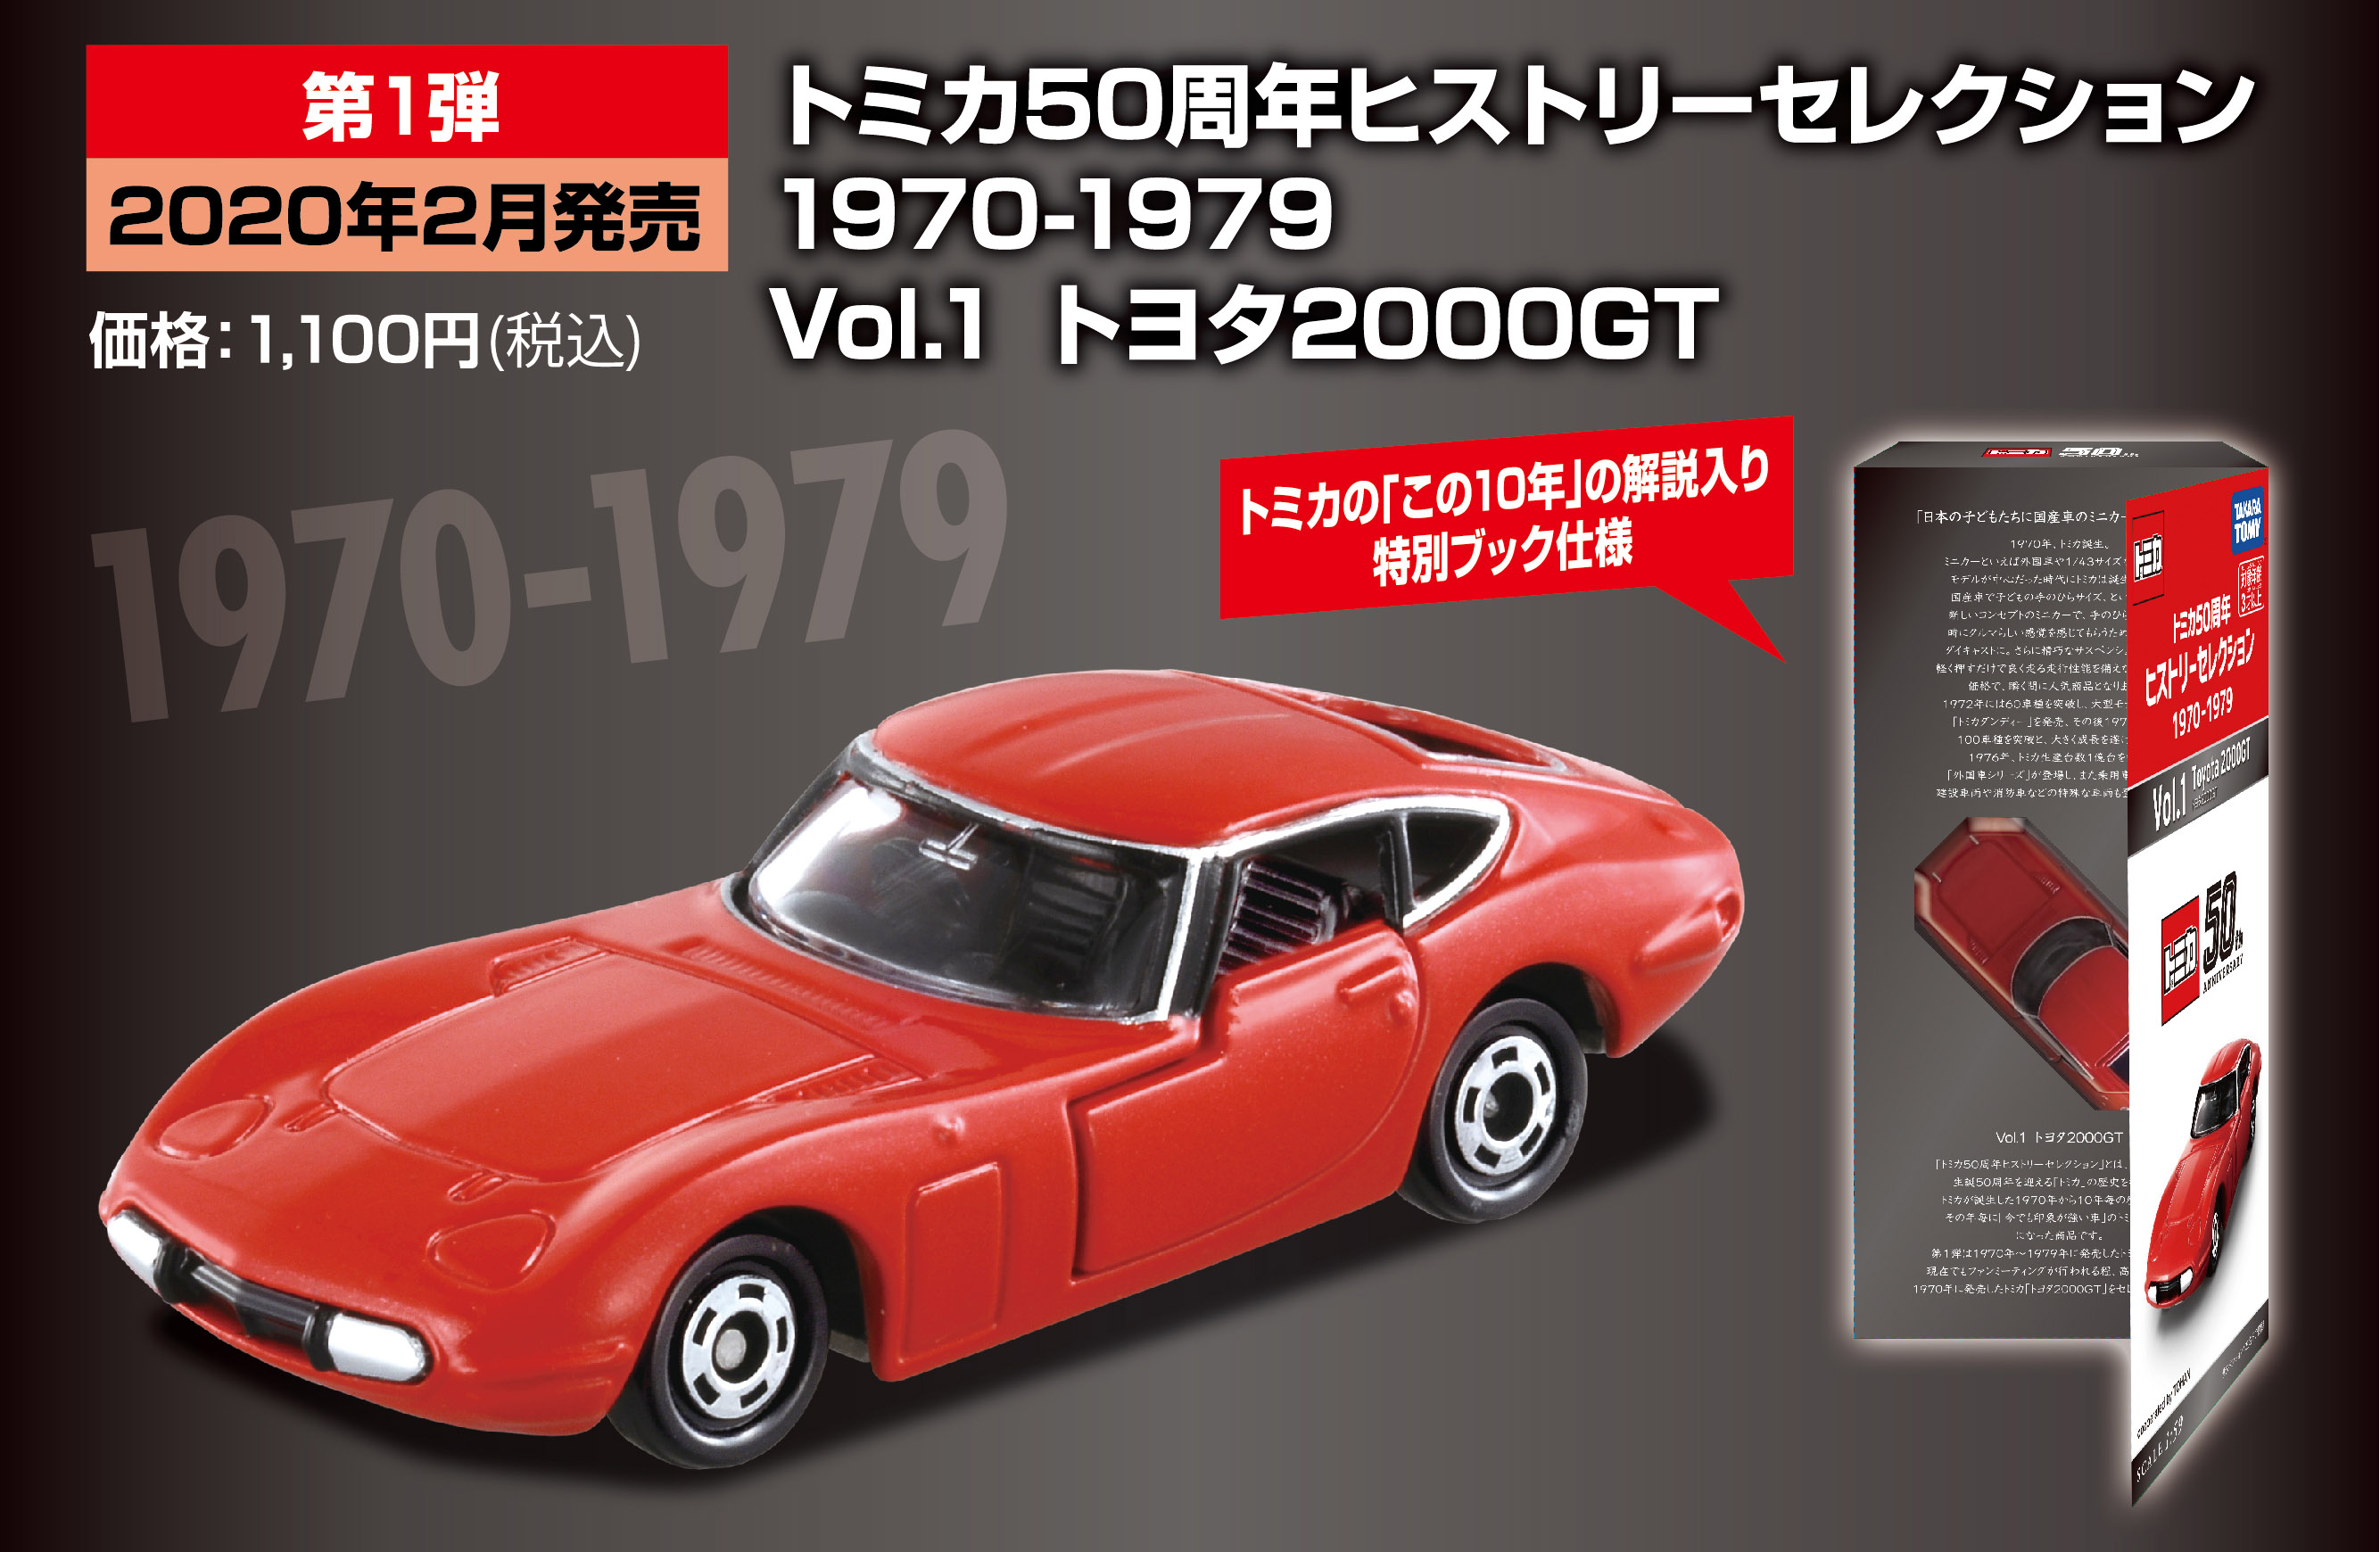 第1弾 2月発売予定 1970-1979 Vol.1 トヨタ2000GT